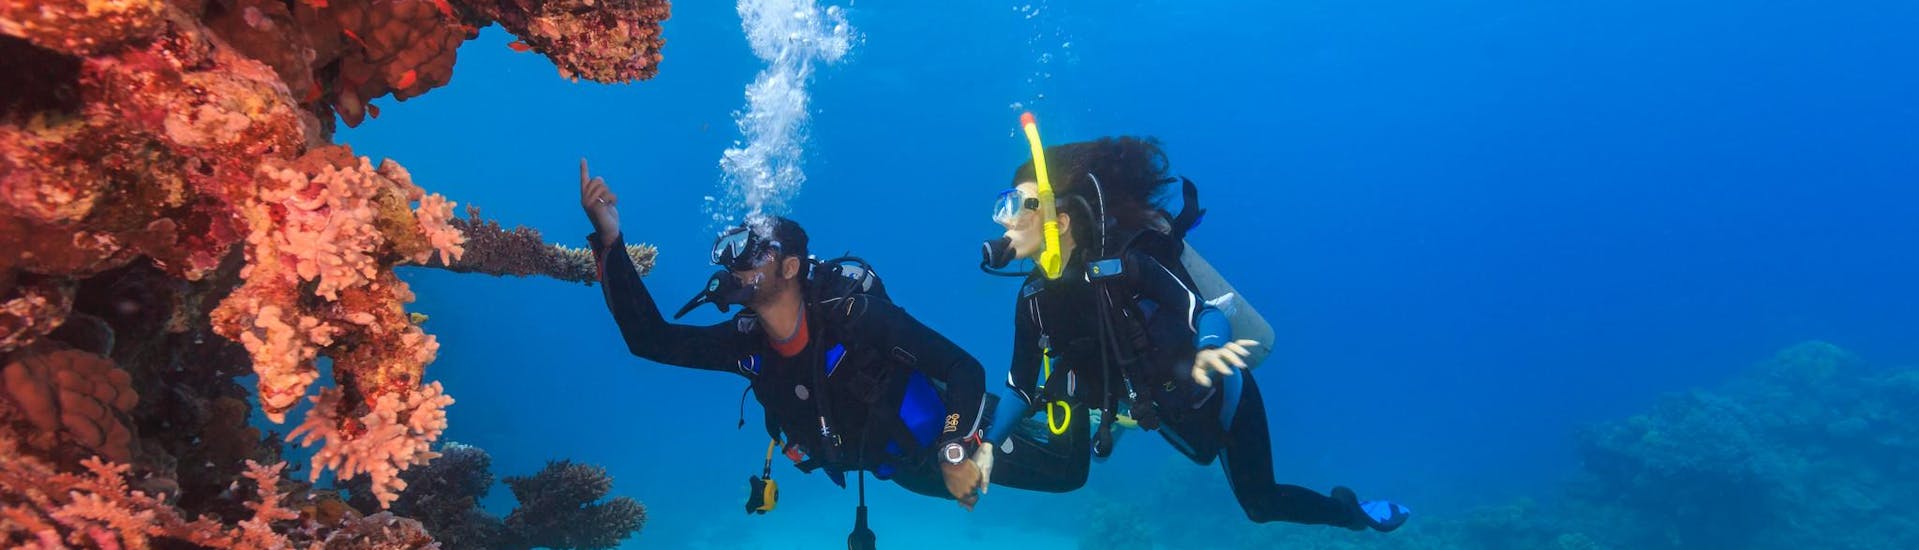 Un groupe de plongeurs suivant un cours FFESSM près d'un récif corallien.